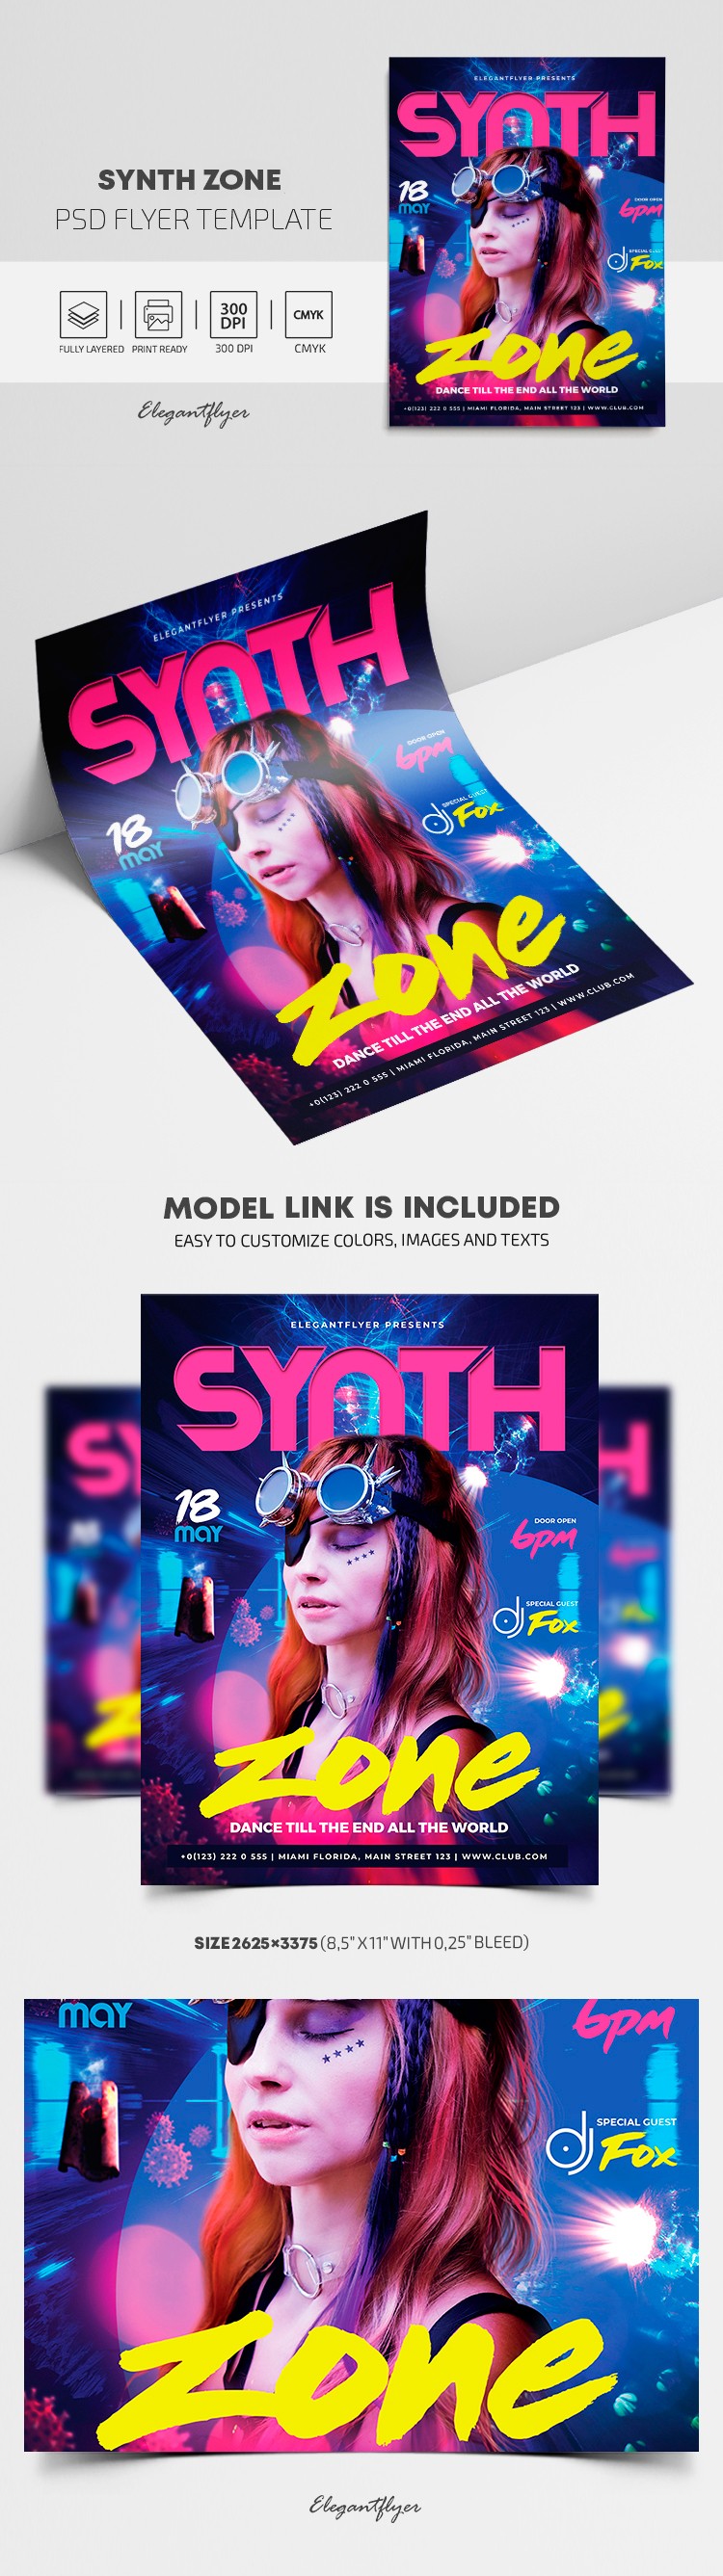 Synth Zone Flyer by ElegantFlyer